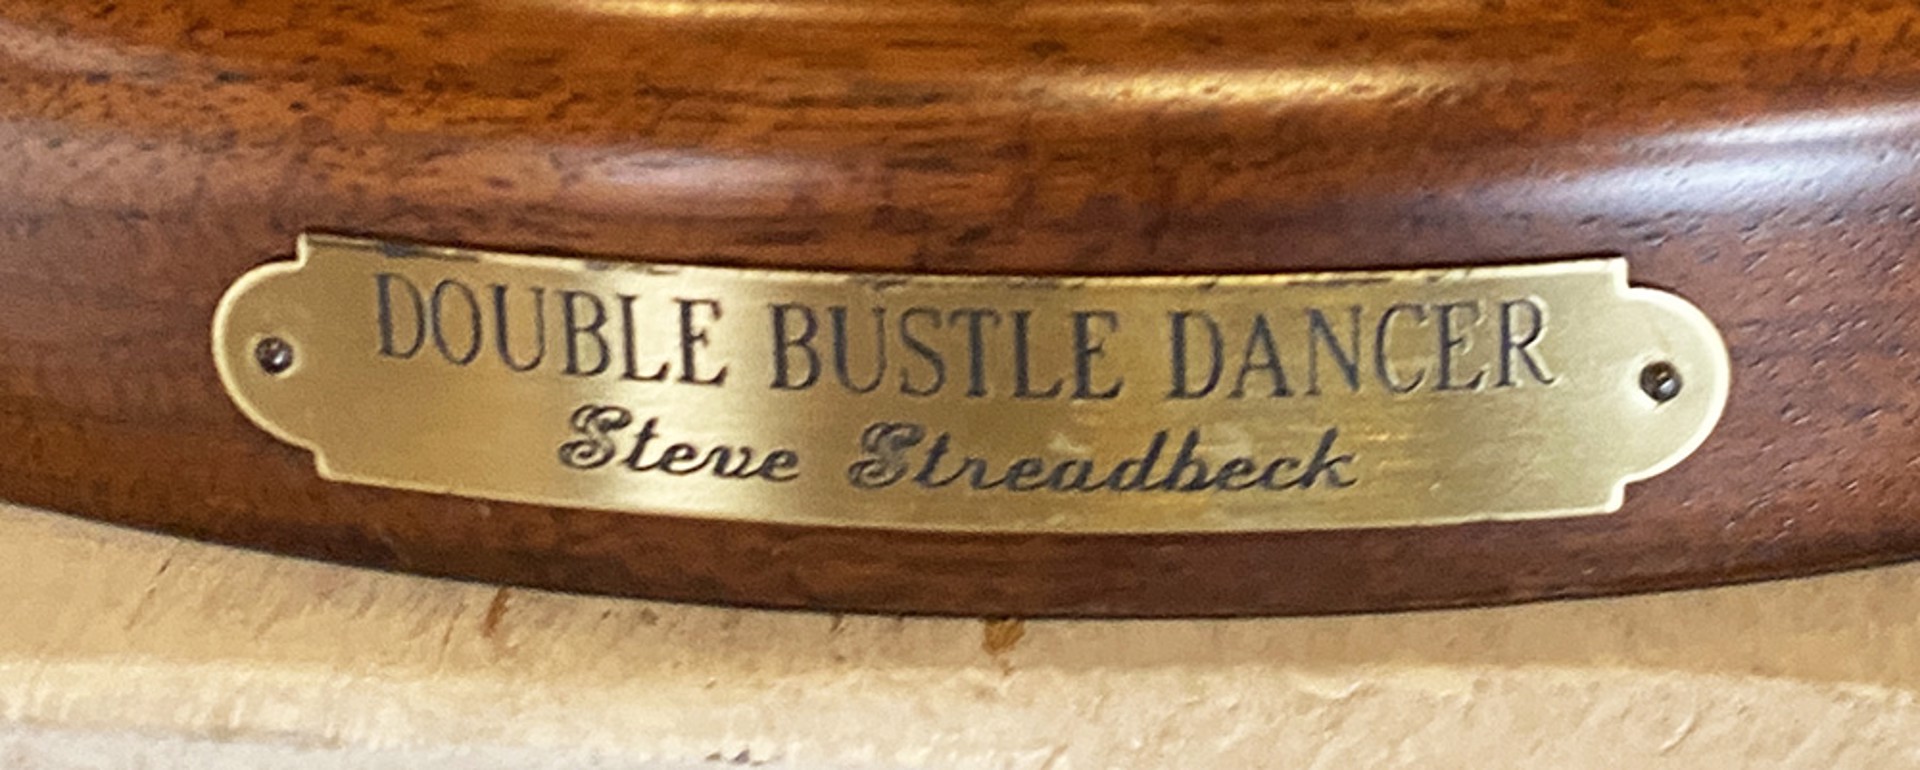 Double Bustle Dancer by Steve Streadbeck